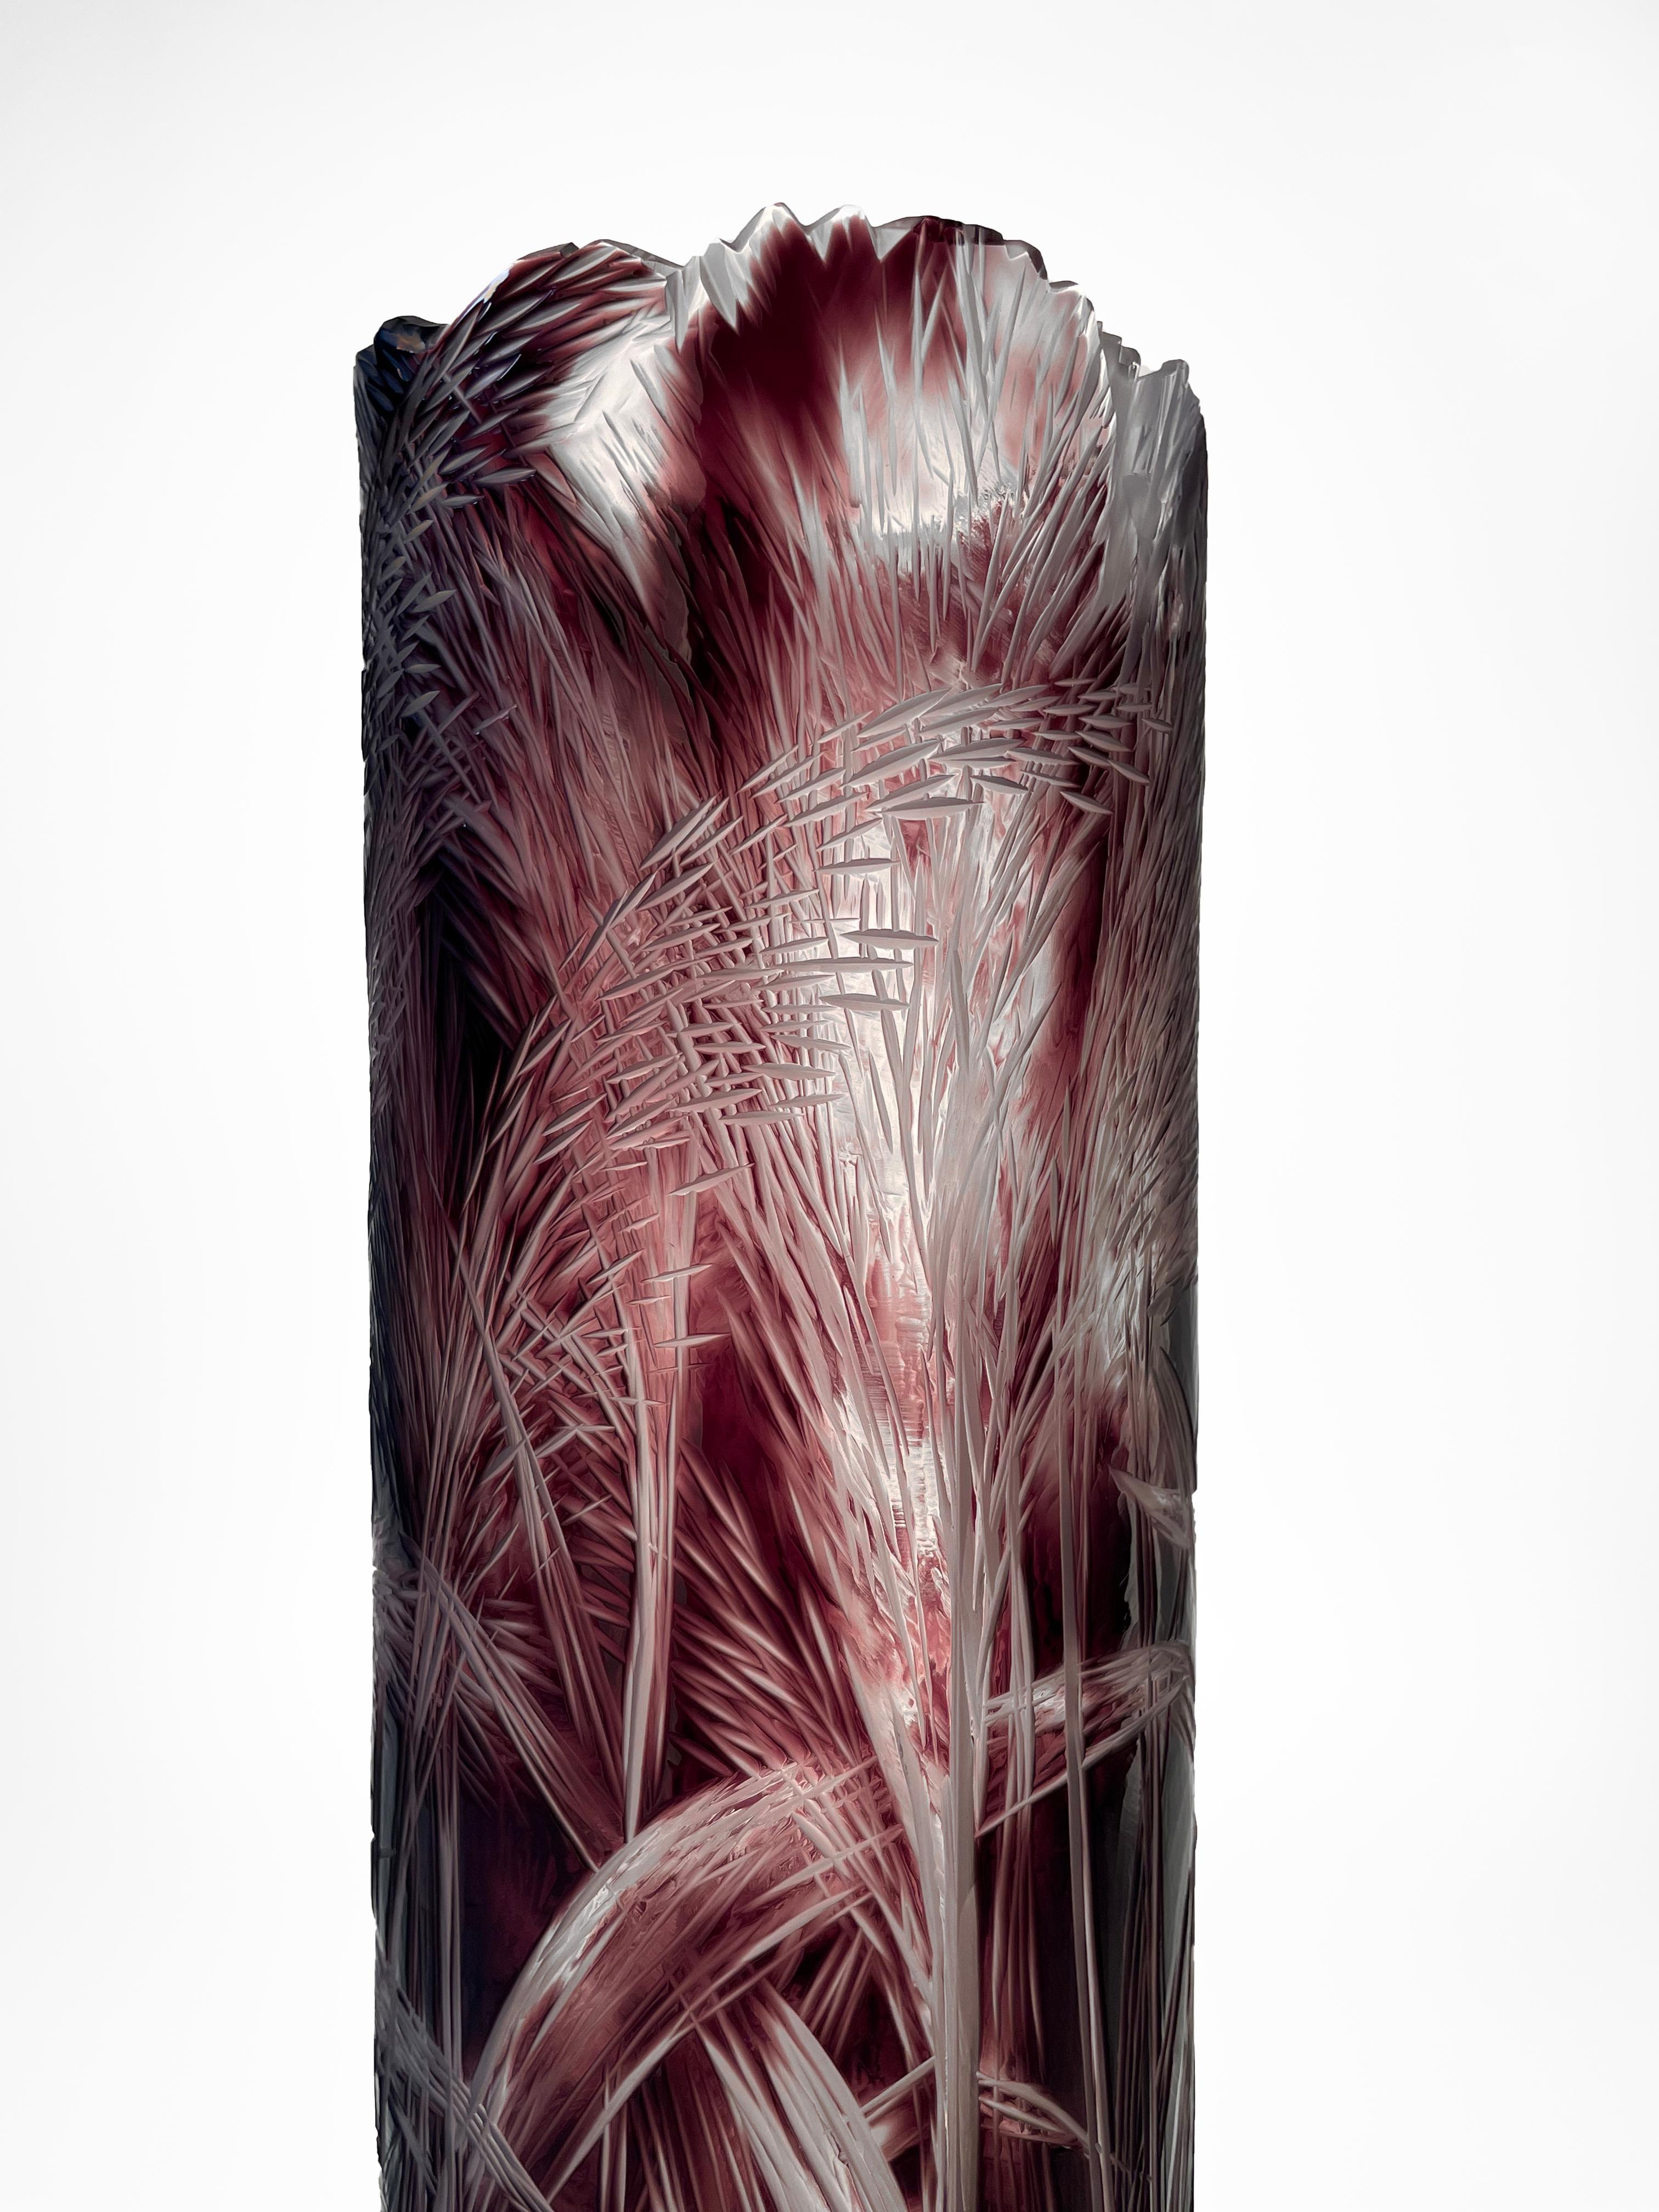 Die Vase ist aus überfangenem Glas hergestellt und hat eine zylindrische Form. Das organische, handgravierte Motiv ist durch das violette, massive Glas bis hin zur Kristallglasschicht graviert. Die Gravur zeigt Schilf, natürliche Halme. Die Gravur